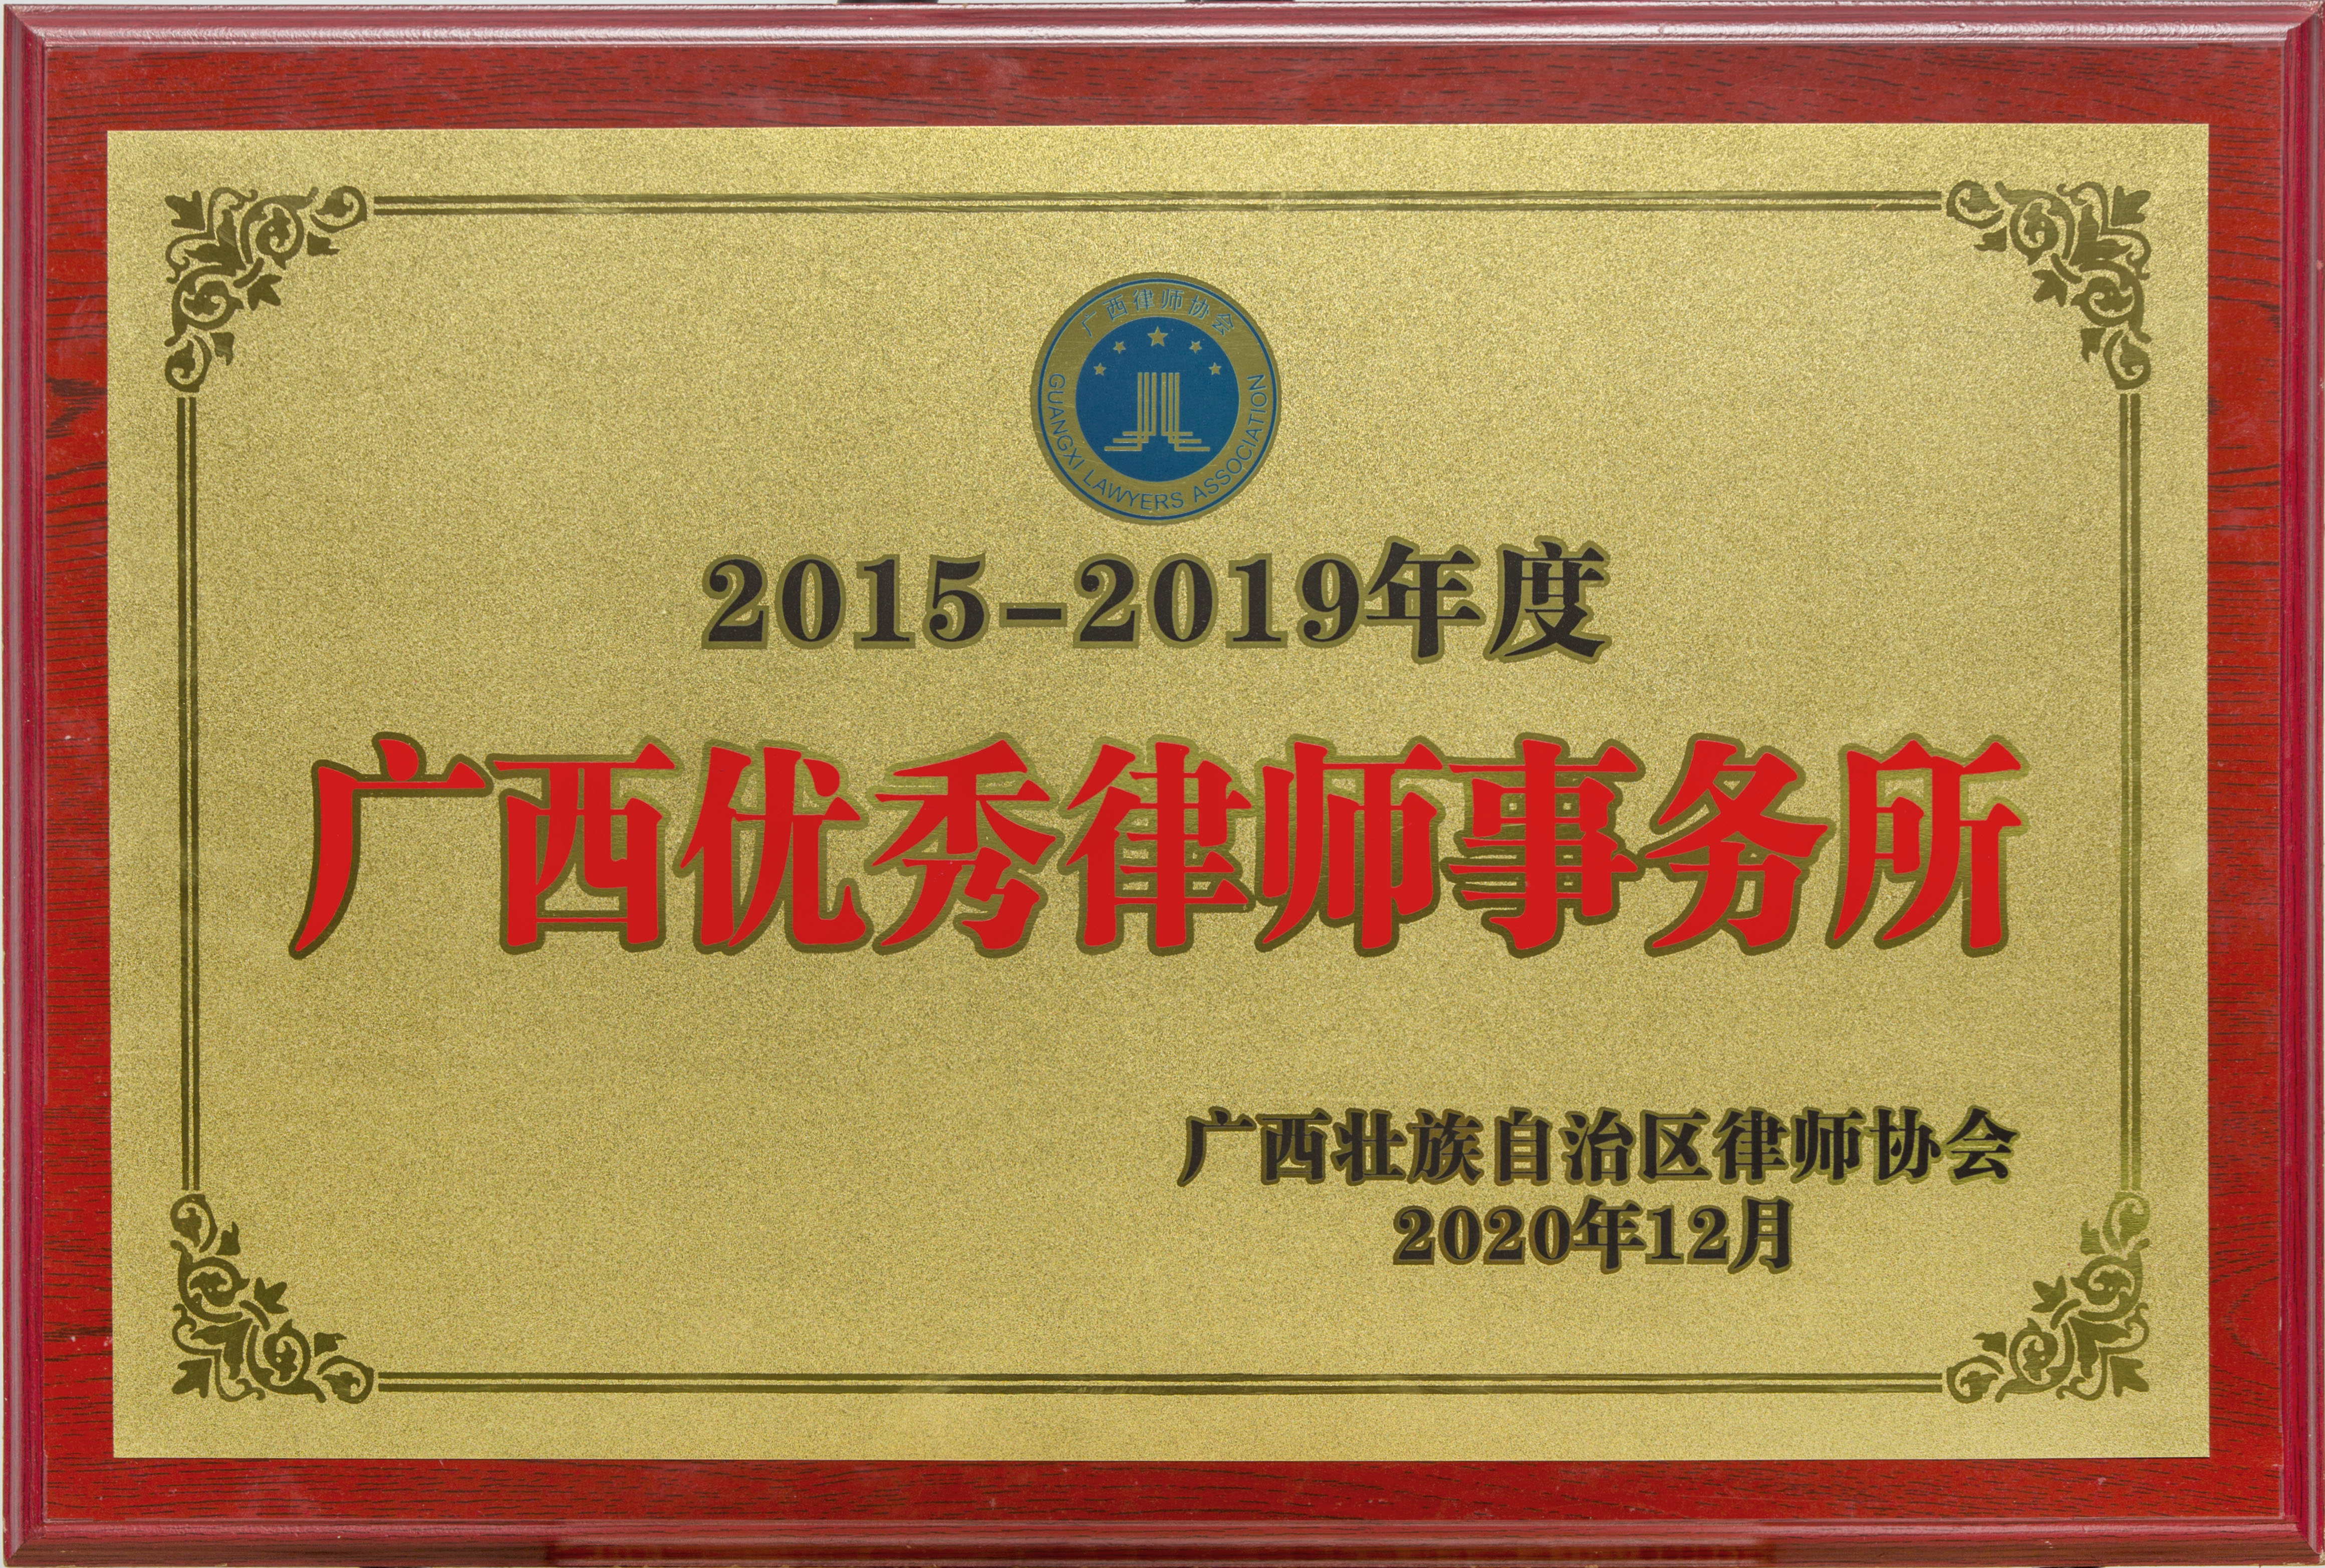 2015-2019年度“广西优秀律师事务所“